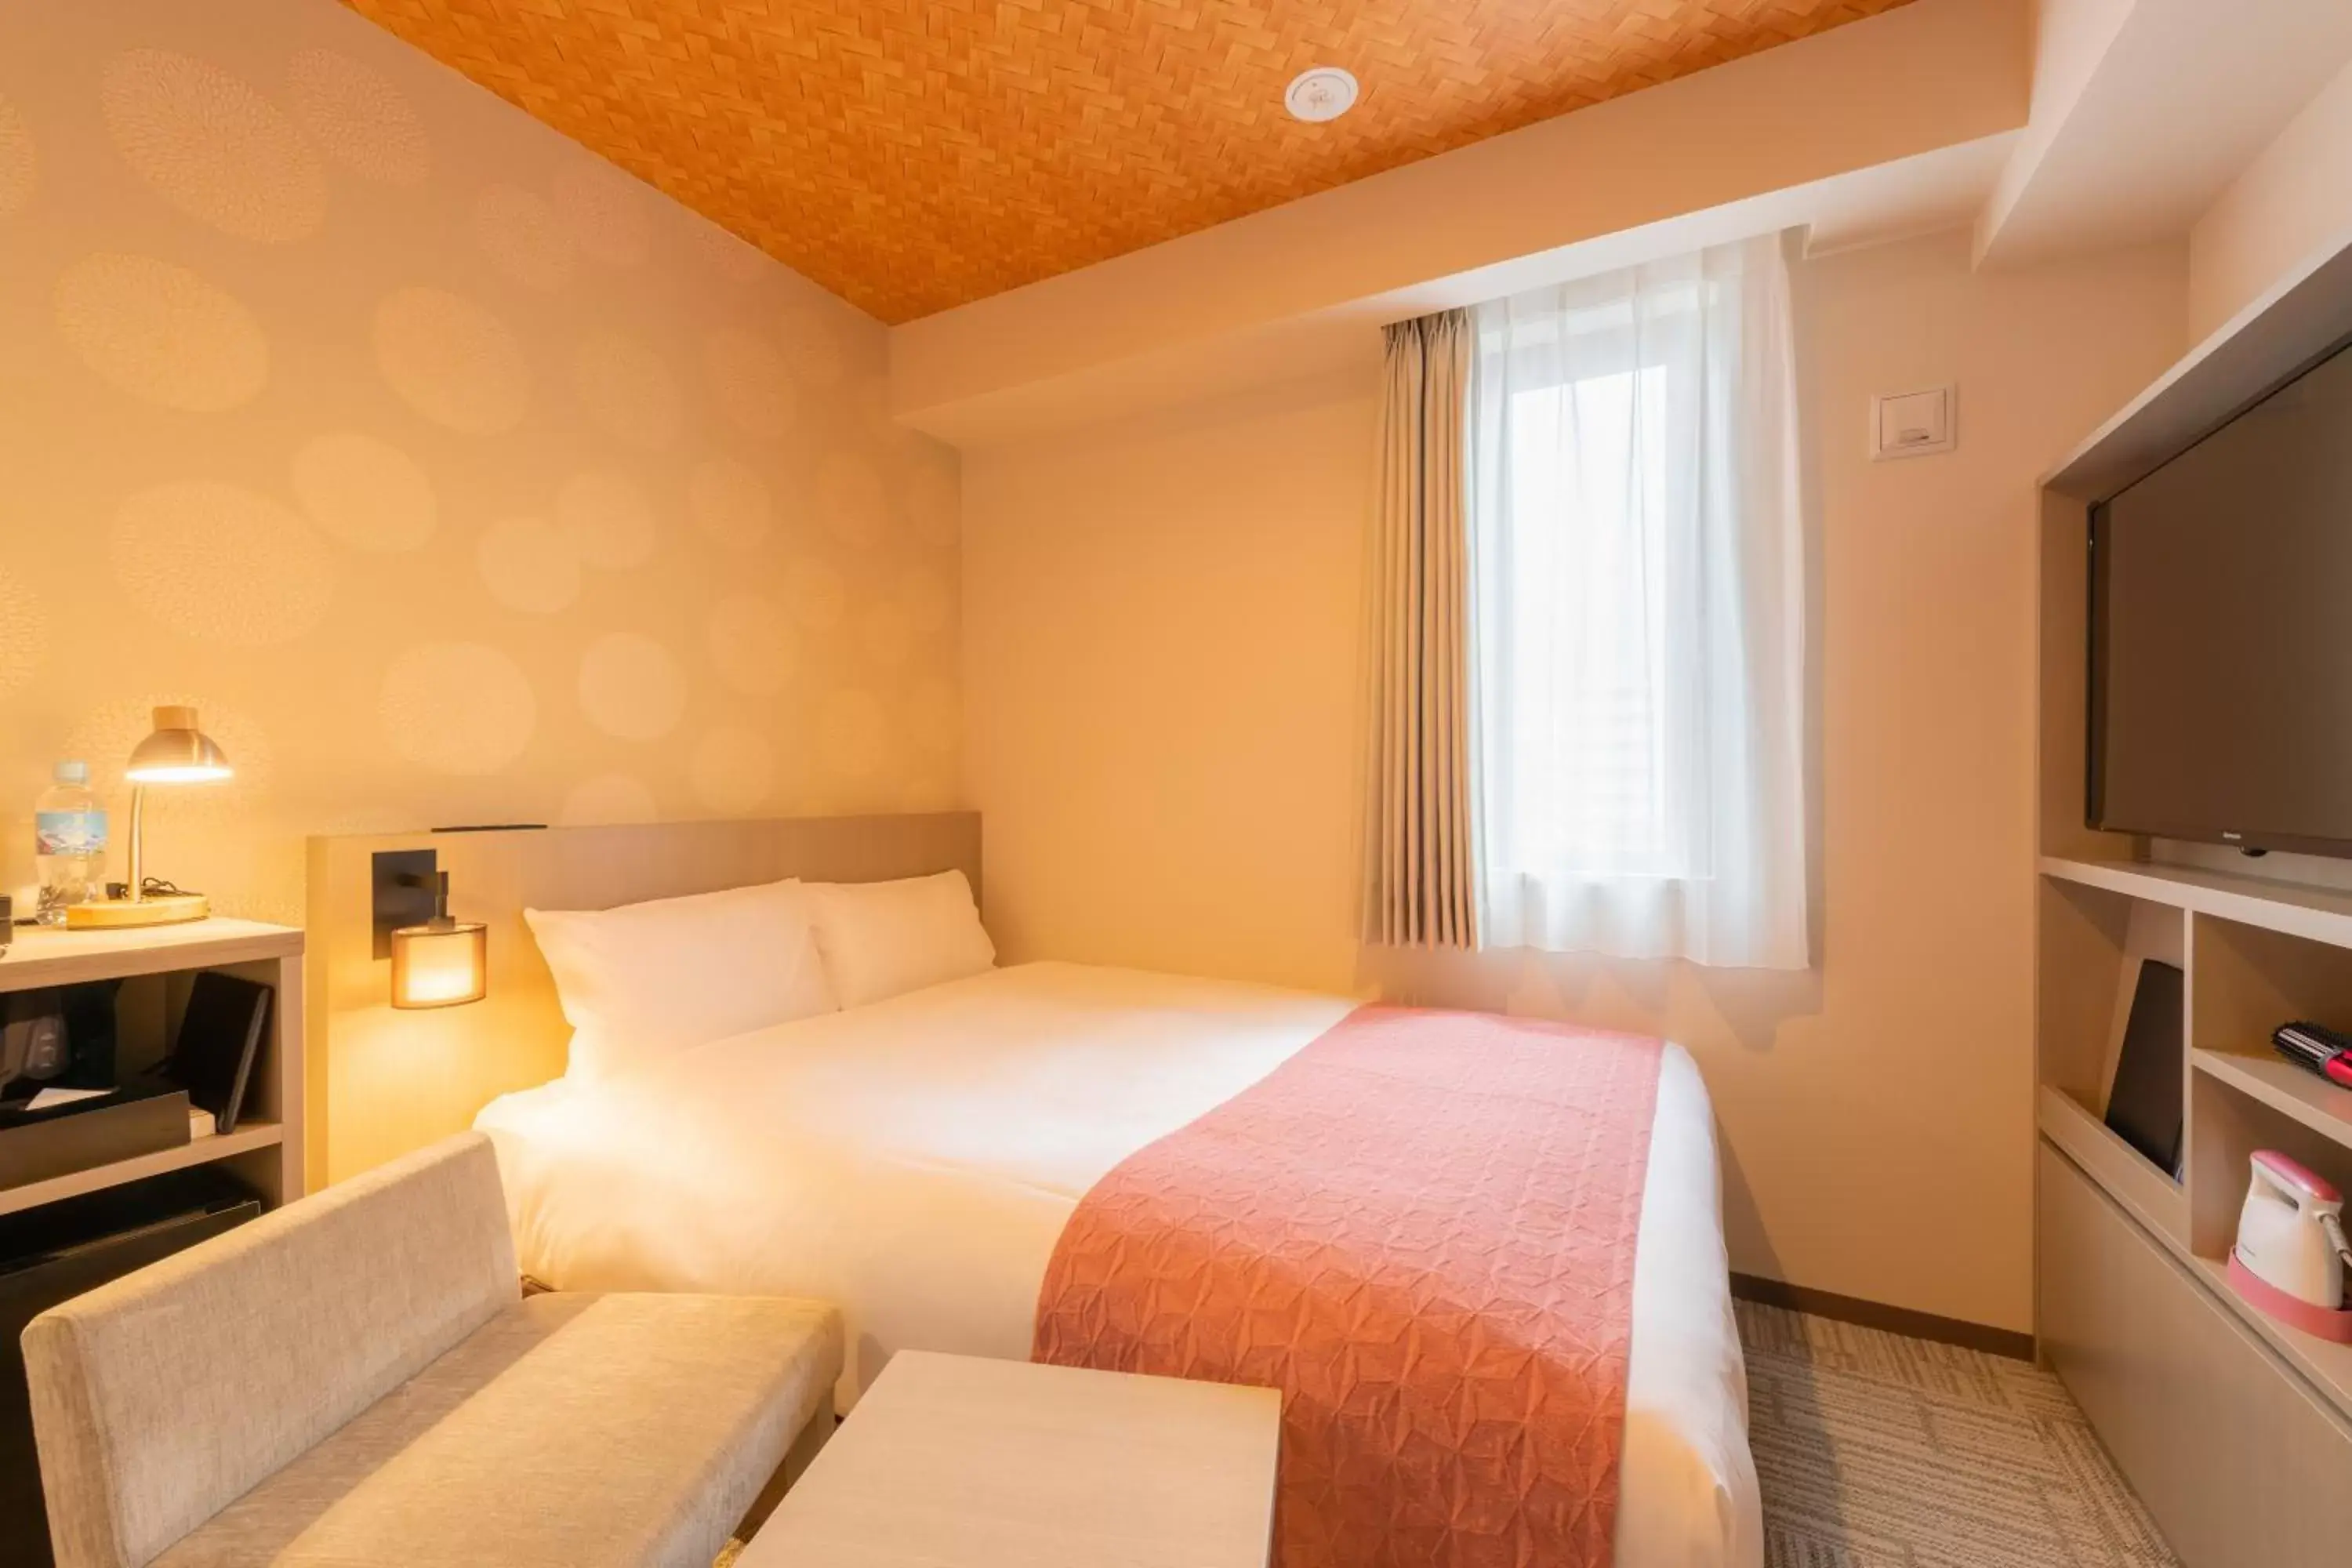 Bed in Tosei Hotel Cocone Asakusa